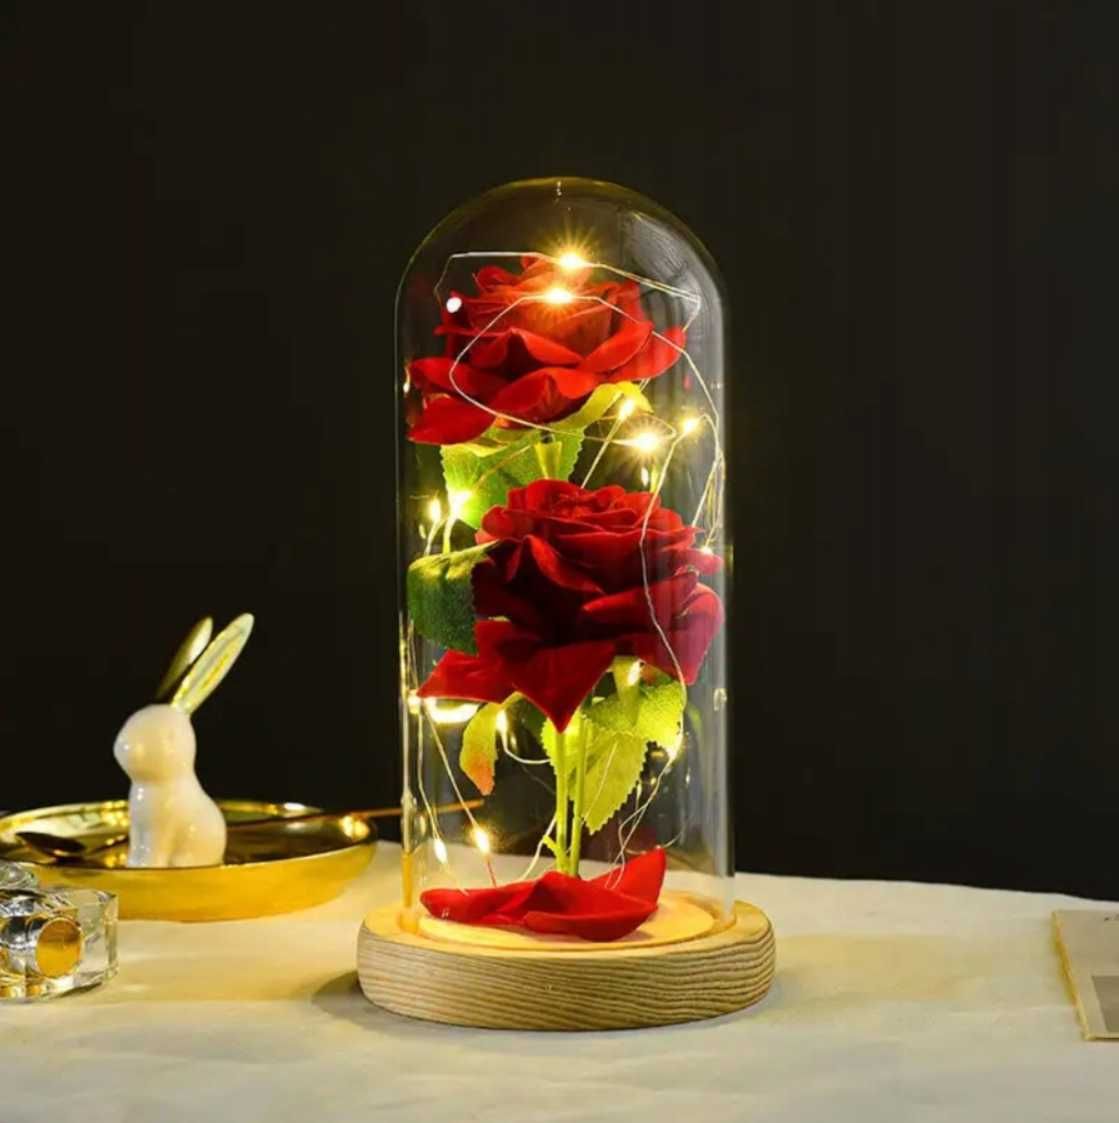 Wieczna róża w szkle podświetlana LED prezent dla wyjątkowej osoby